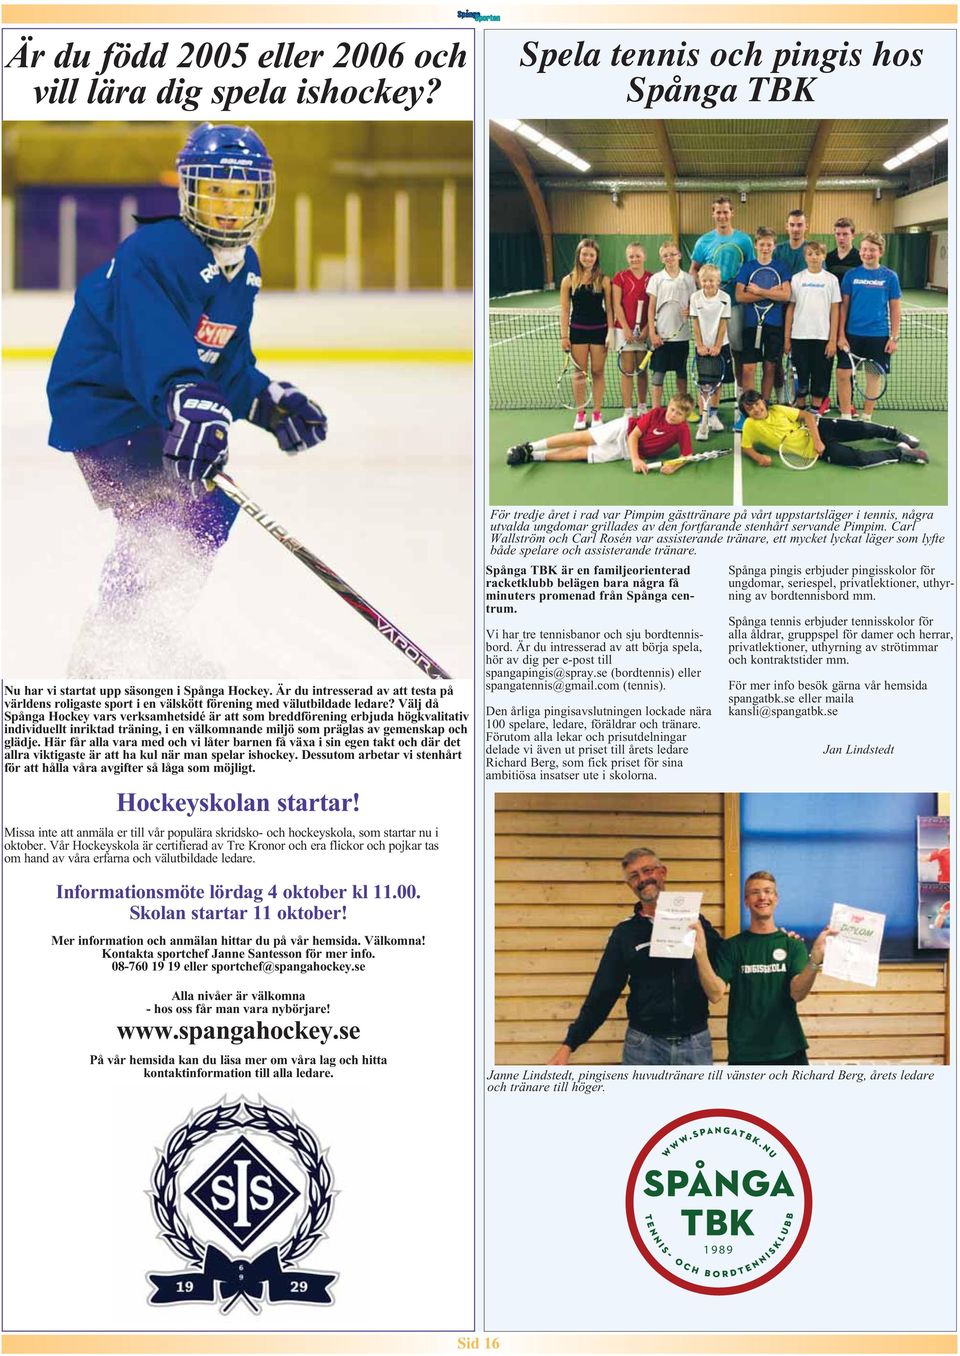 Välj då Spånga Hockey vars verksamhetsidé är att som breddförening erbjuda högkvalitativ individuellt inriktad träning, i en välkomnande miljö som präglas av gemenskap och glädje.